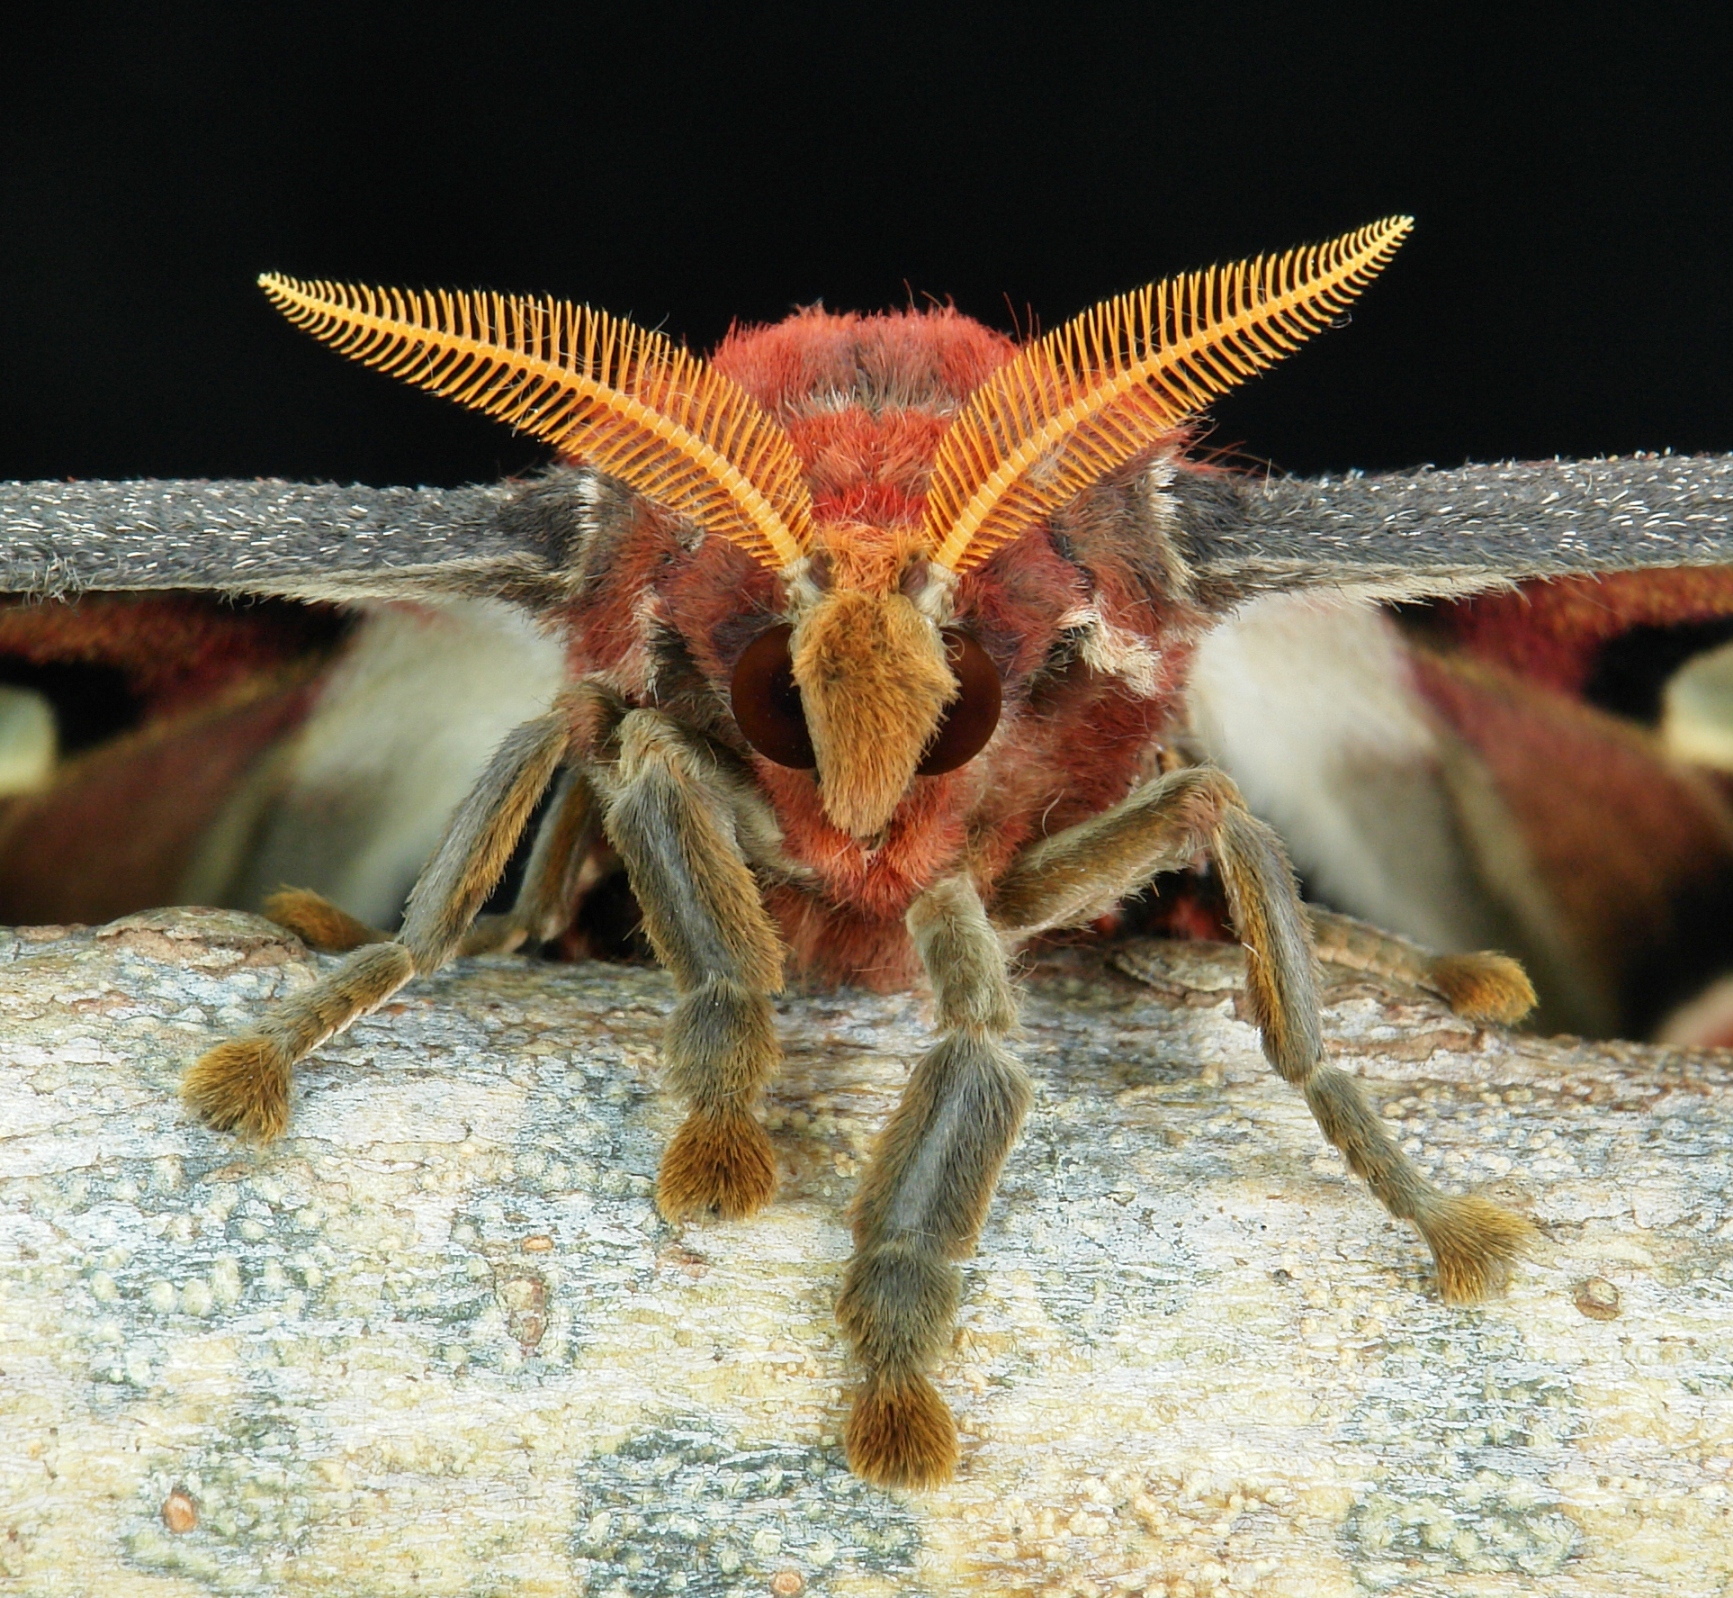 Atlas-moth-face-close-up.jpg